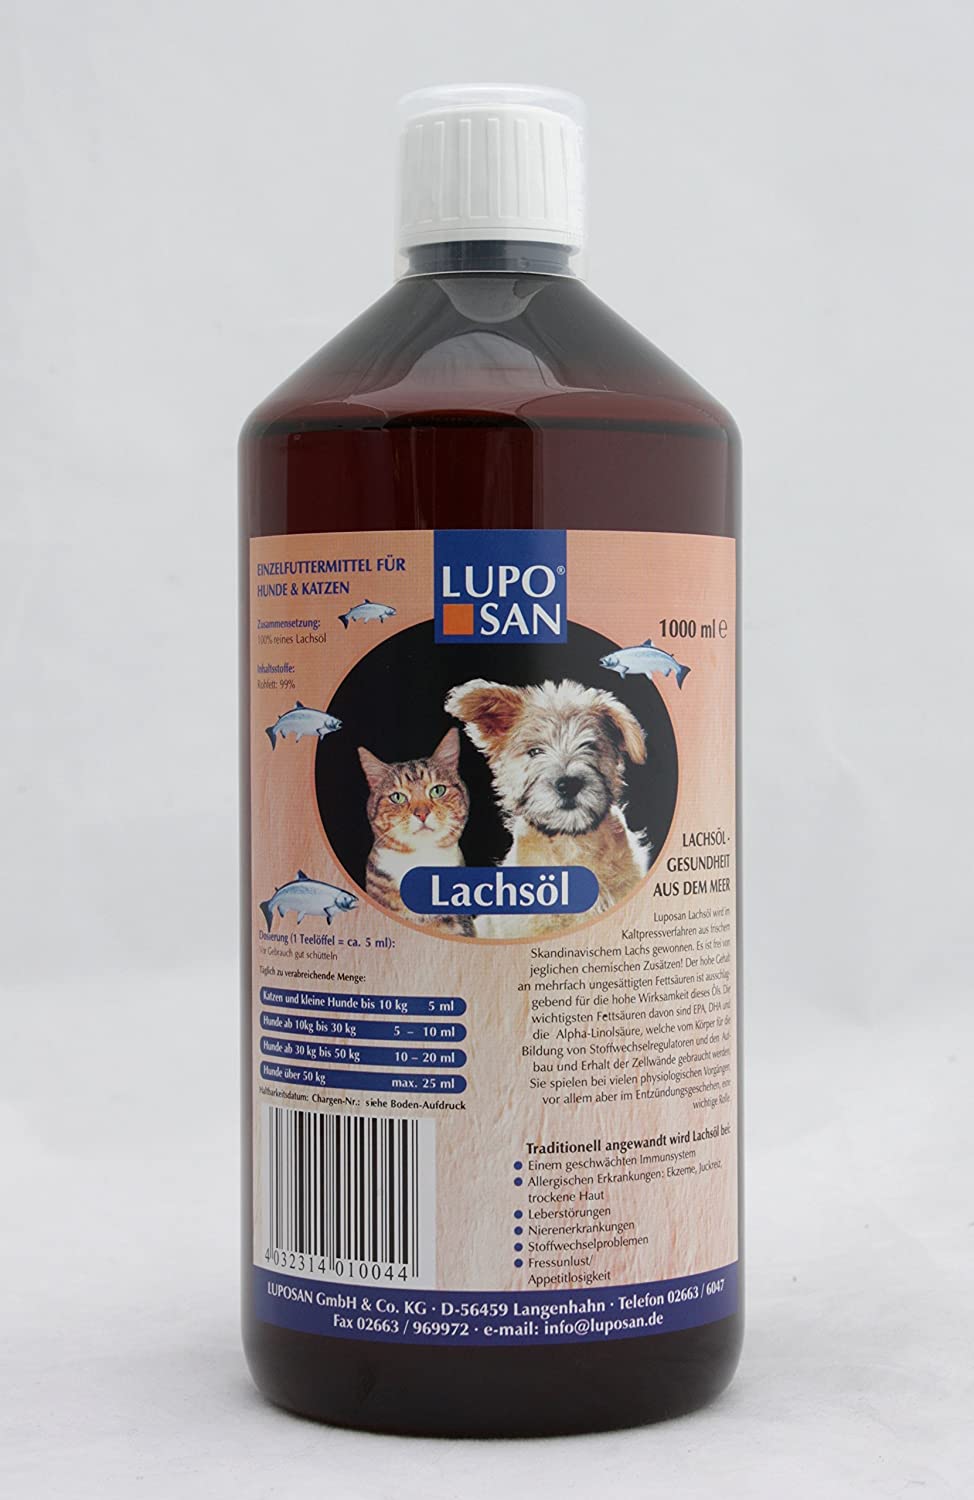  Luposan - Lachsöl Aceite Puro De Salmón Salvaje, Presentaciones - 1000 Ml. 